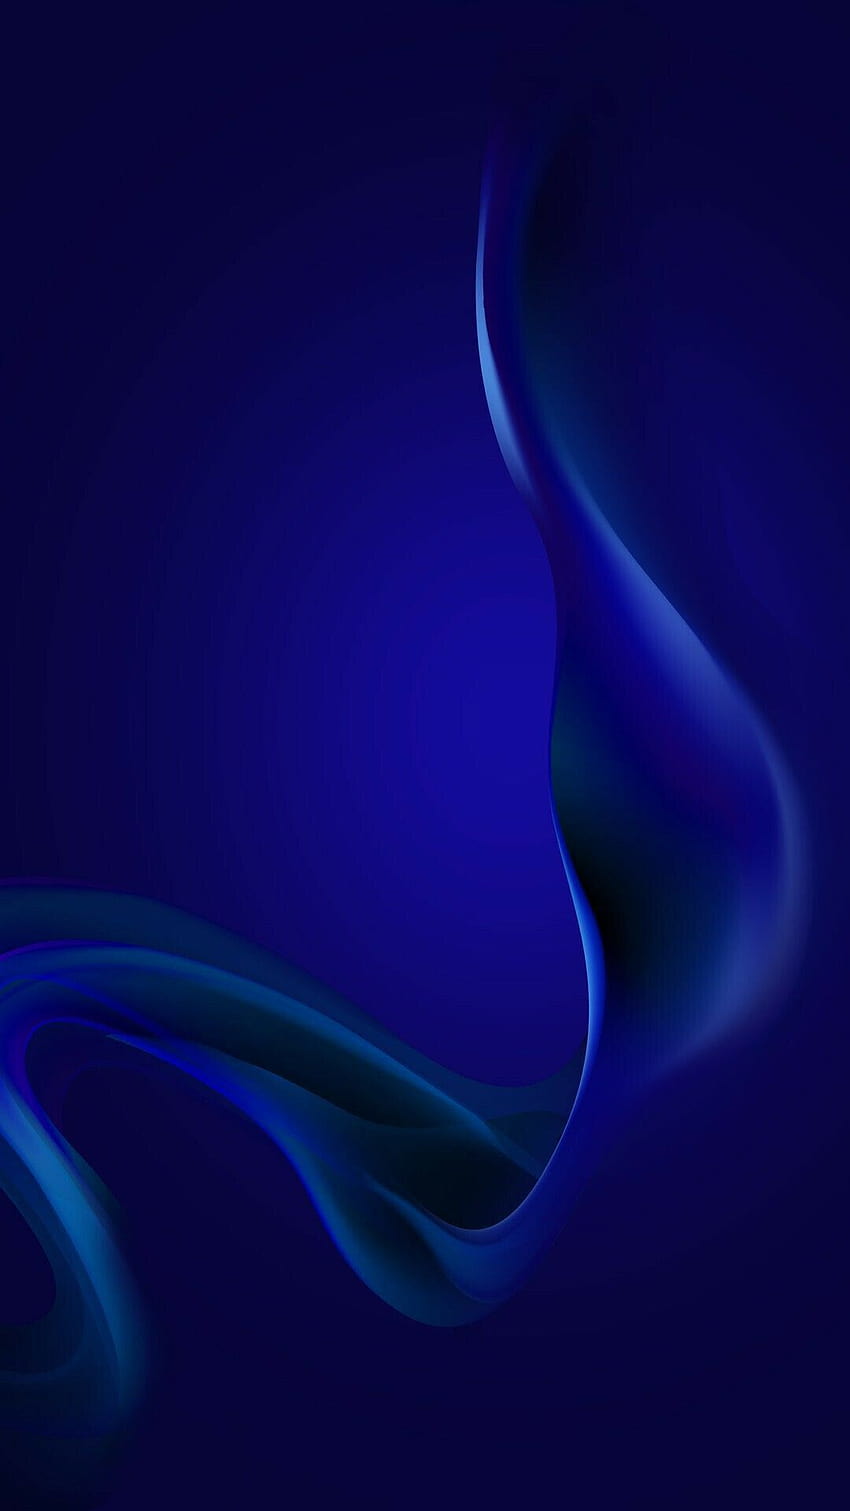 von lebendigen blauen Hintergründen ... pinterest.ca, dunkelblaues Handy HD-Handy-Hintergrundbild